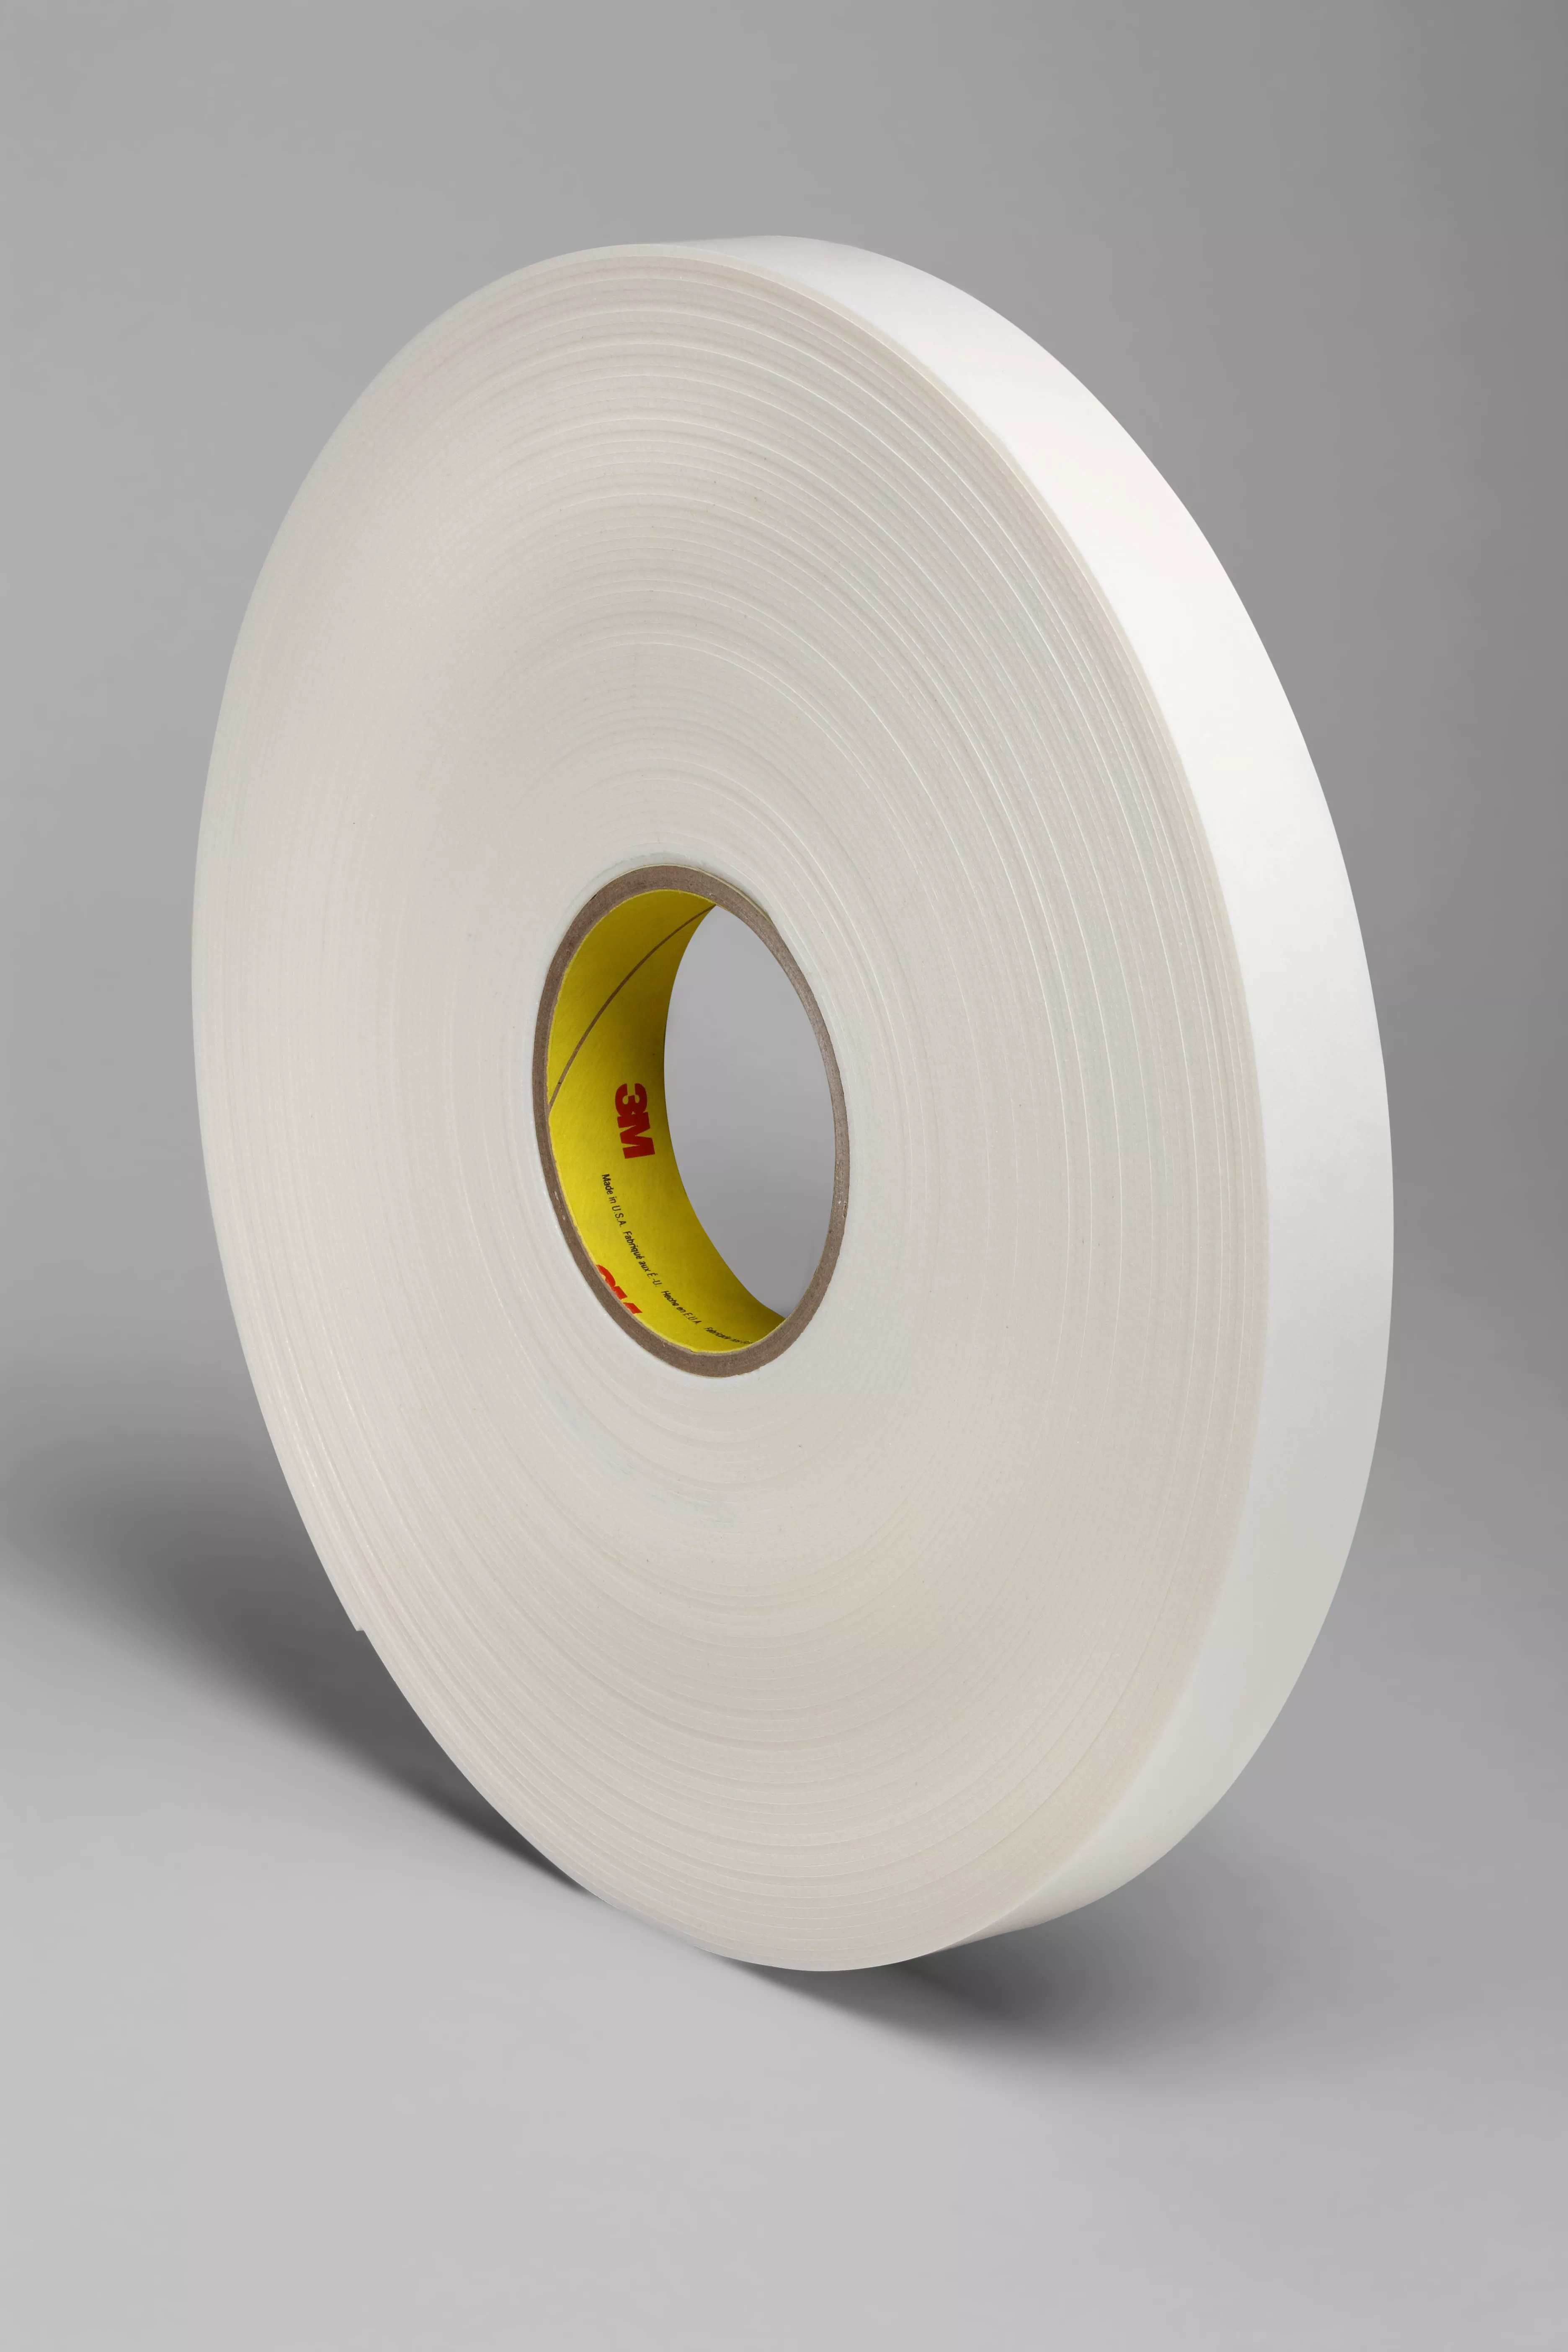 3M™ Double Coated Polyethylene Foam Tape 4466, White, 2 in x 36 yd, 62
mil, 6 Roll/Case